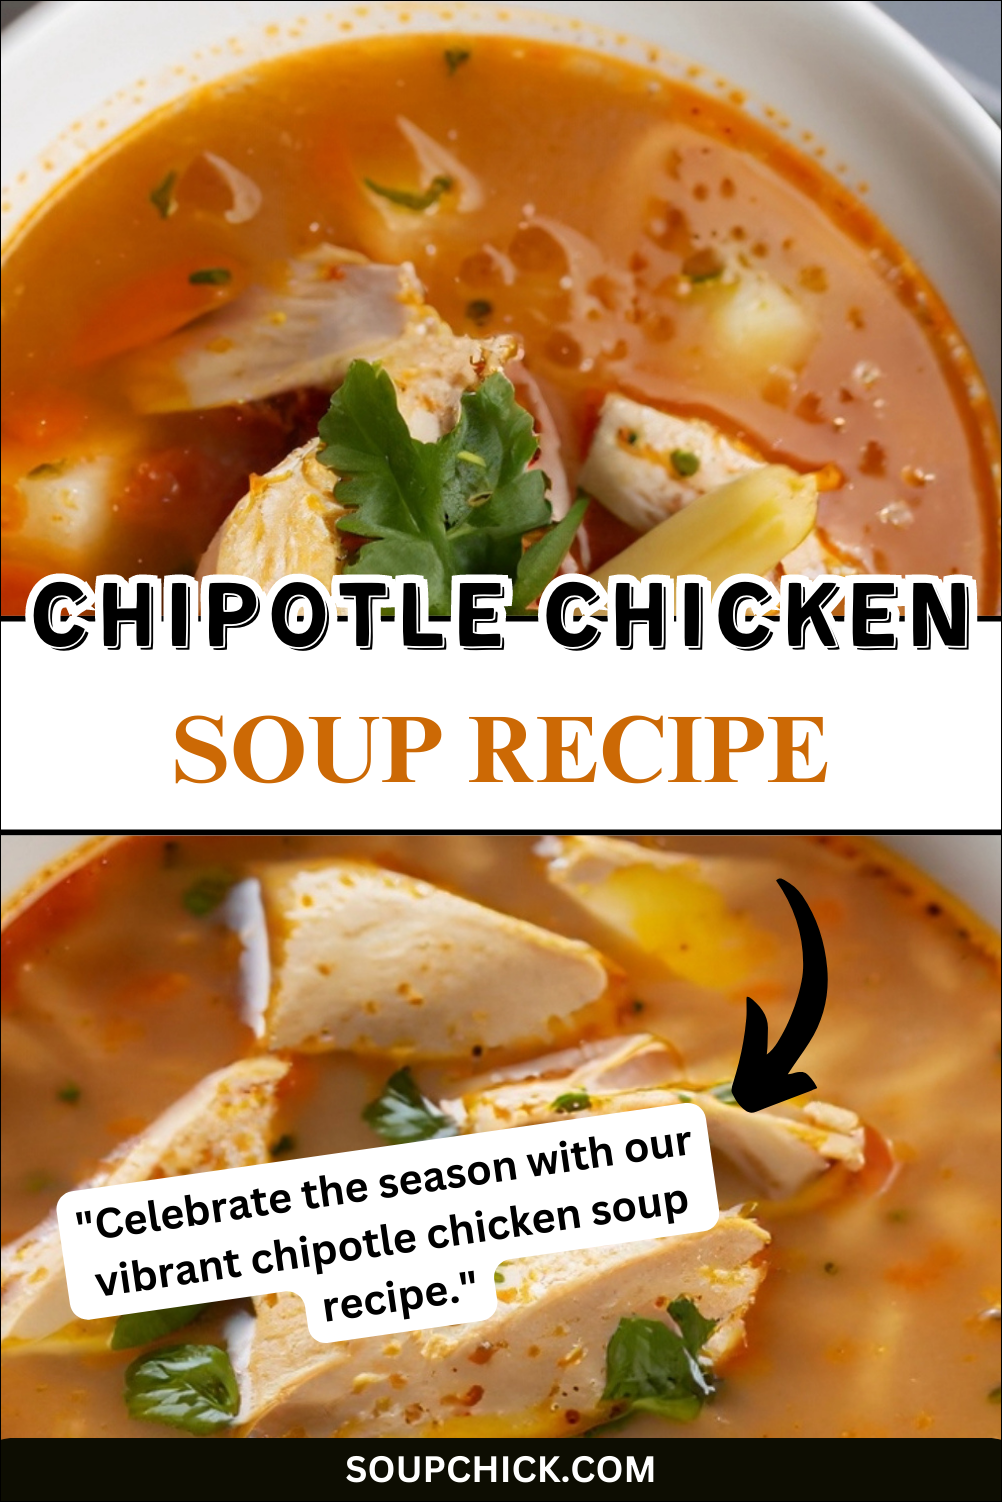 Chipotle Chicken Soup Recipe